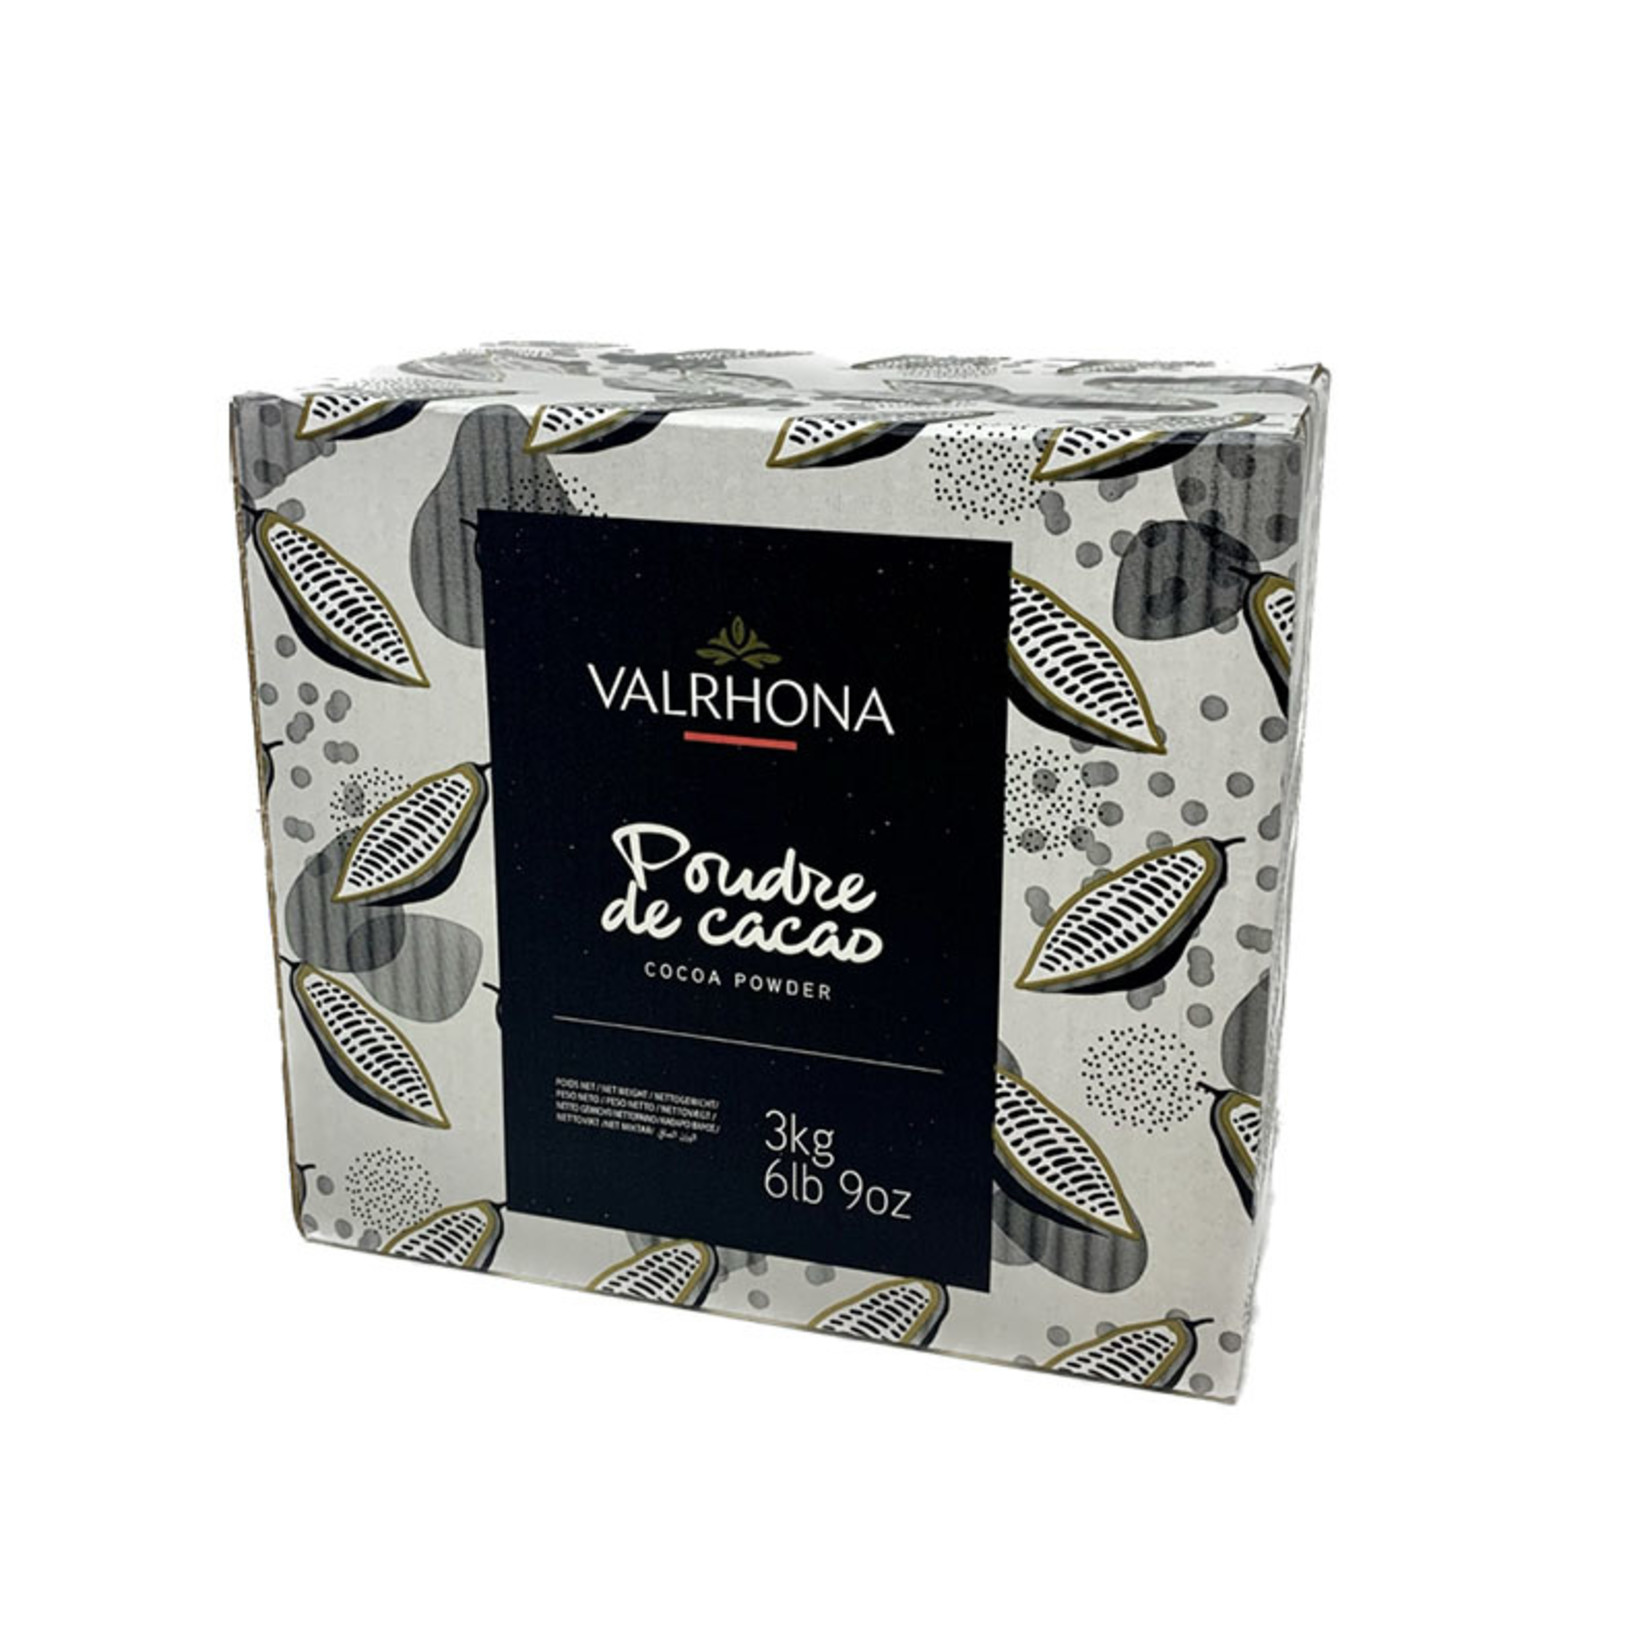 Valrhona Valrhona - Cocoa Powder - 6.6 lb